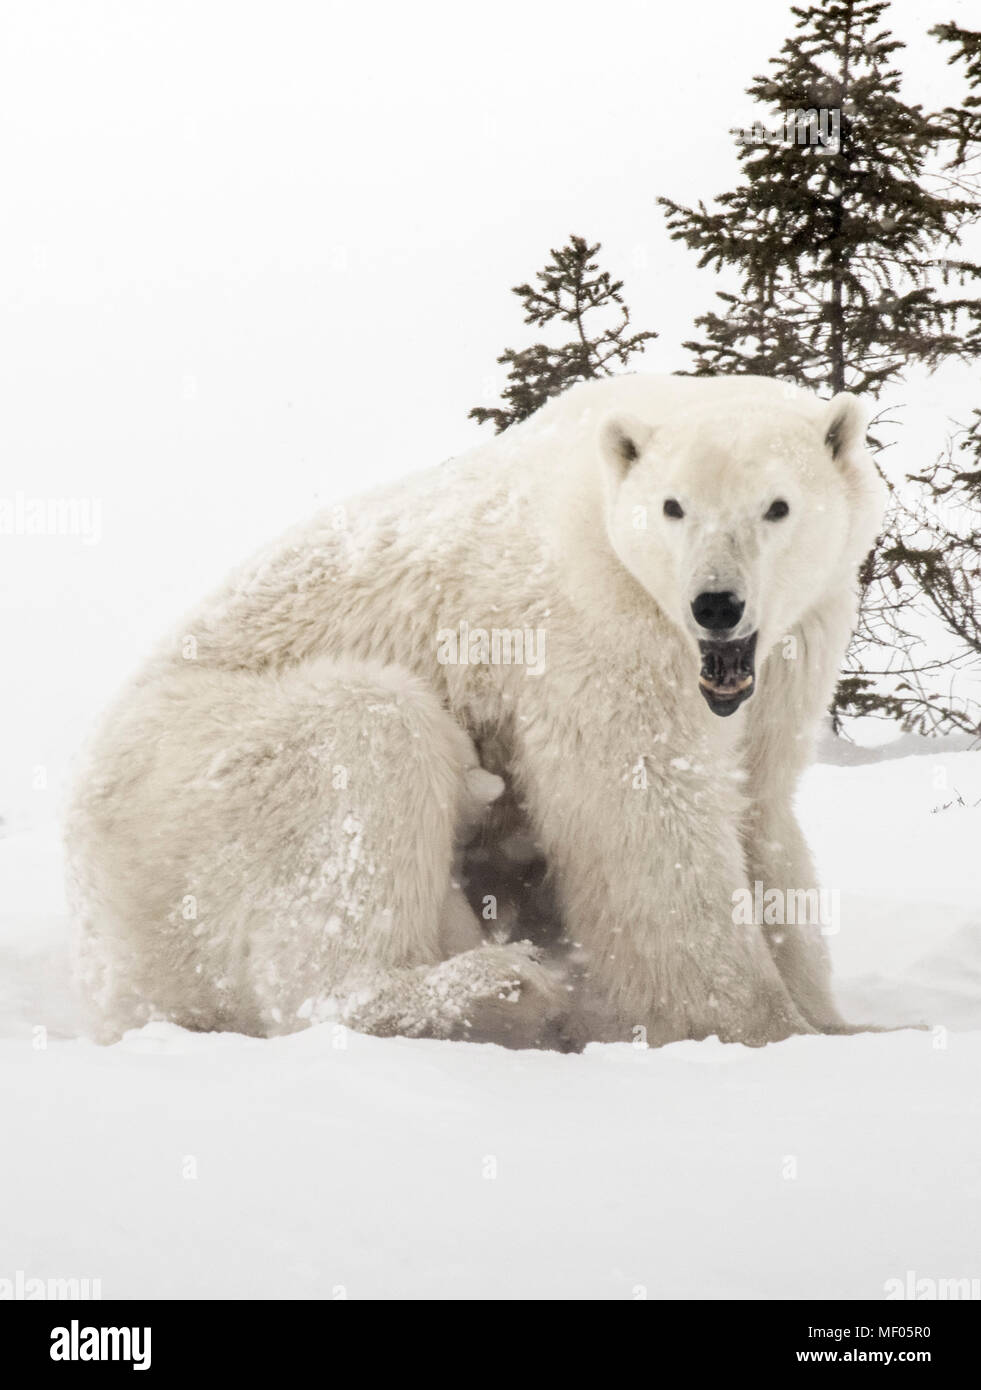 Jungen zwischen den Beinen der Mutter zu warm und zu Schwester halten verstecken. Polar Bear Mütter sind sehr schützende und pflegende mit ihren kleinen Jungen. Stockfoto